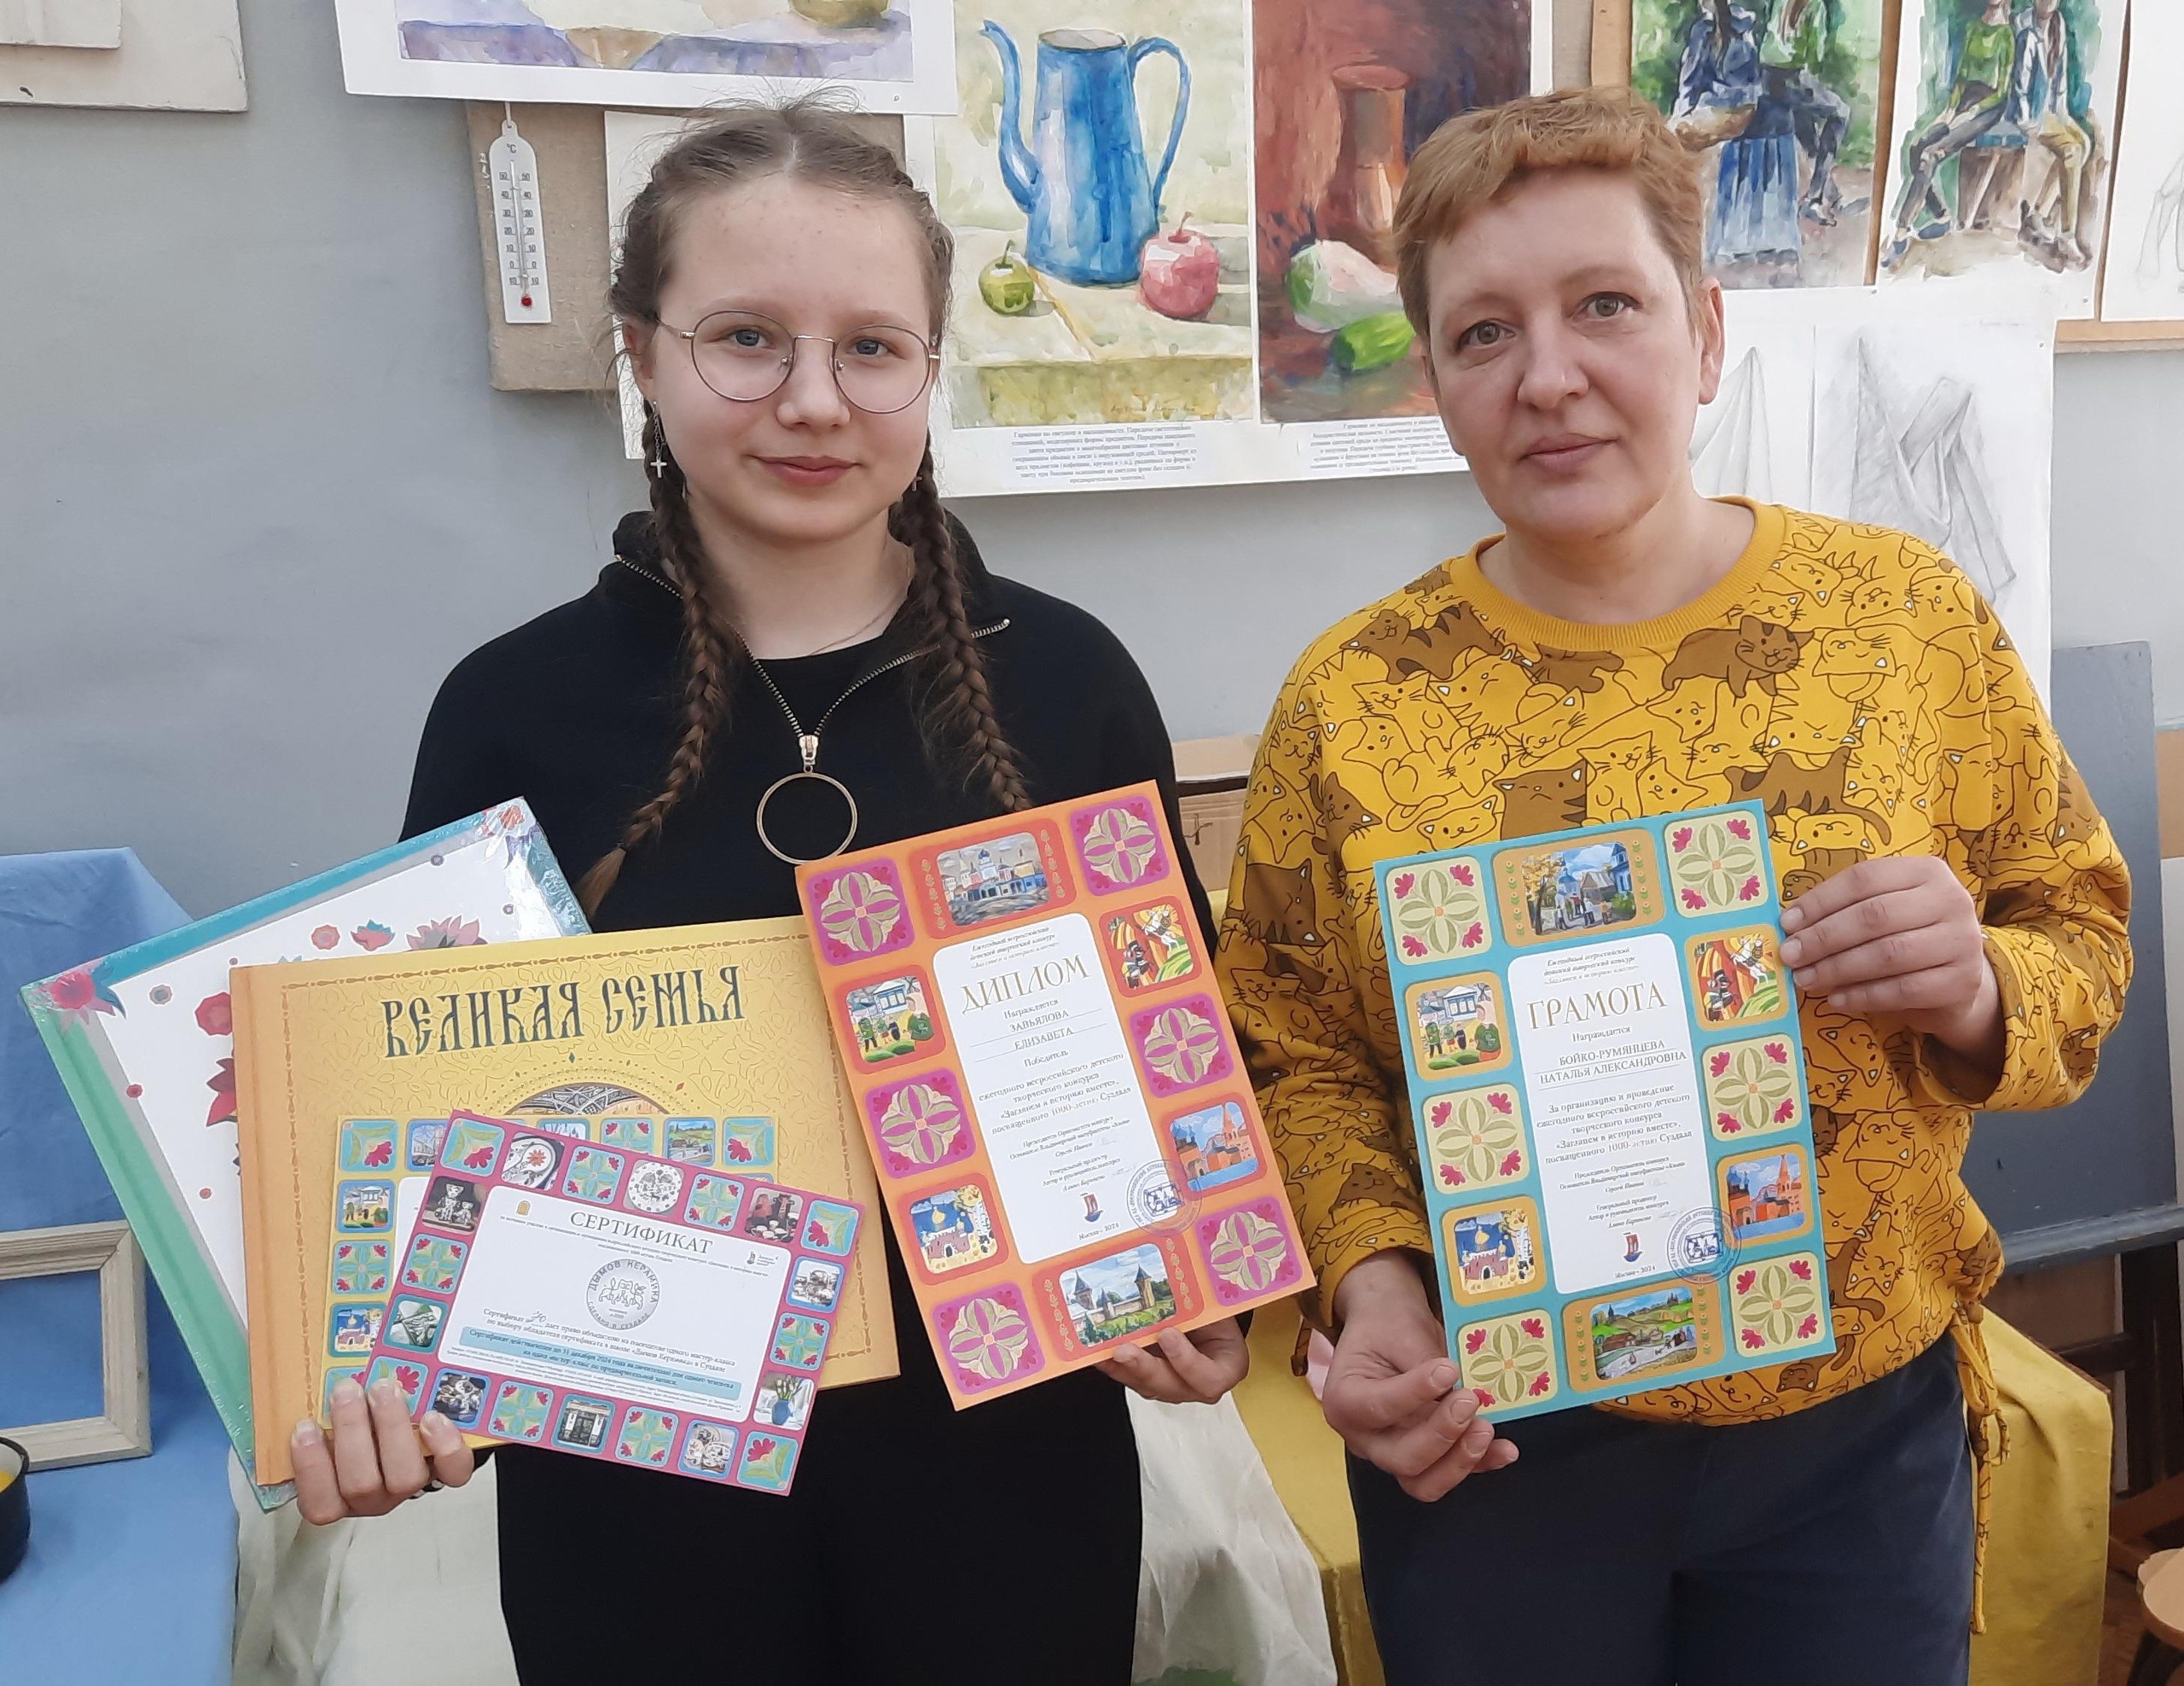 Учащаяся ДХШ победила на творческом конкурсе в честь 1000-летия Суздаля